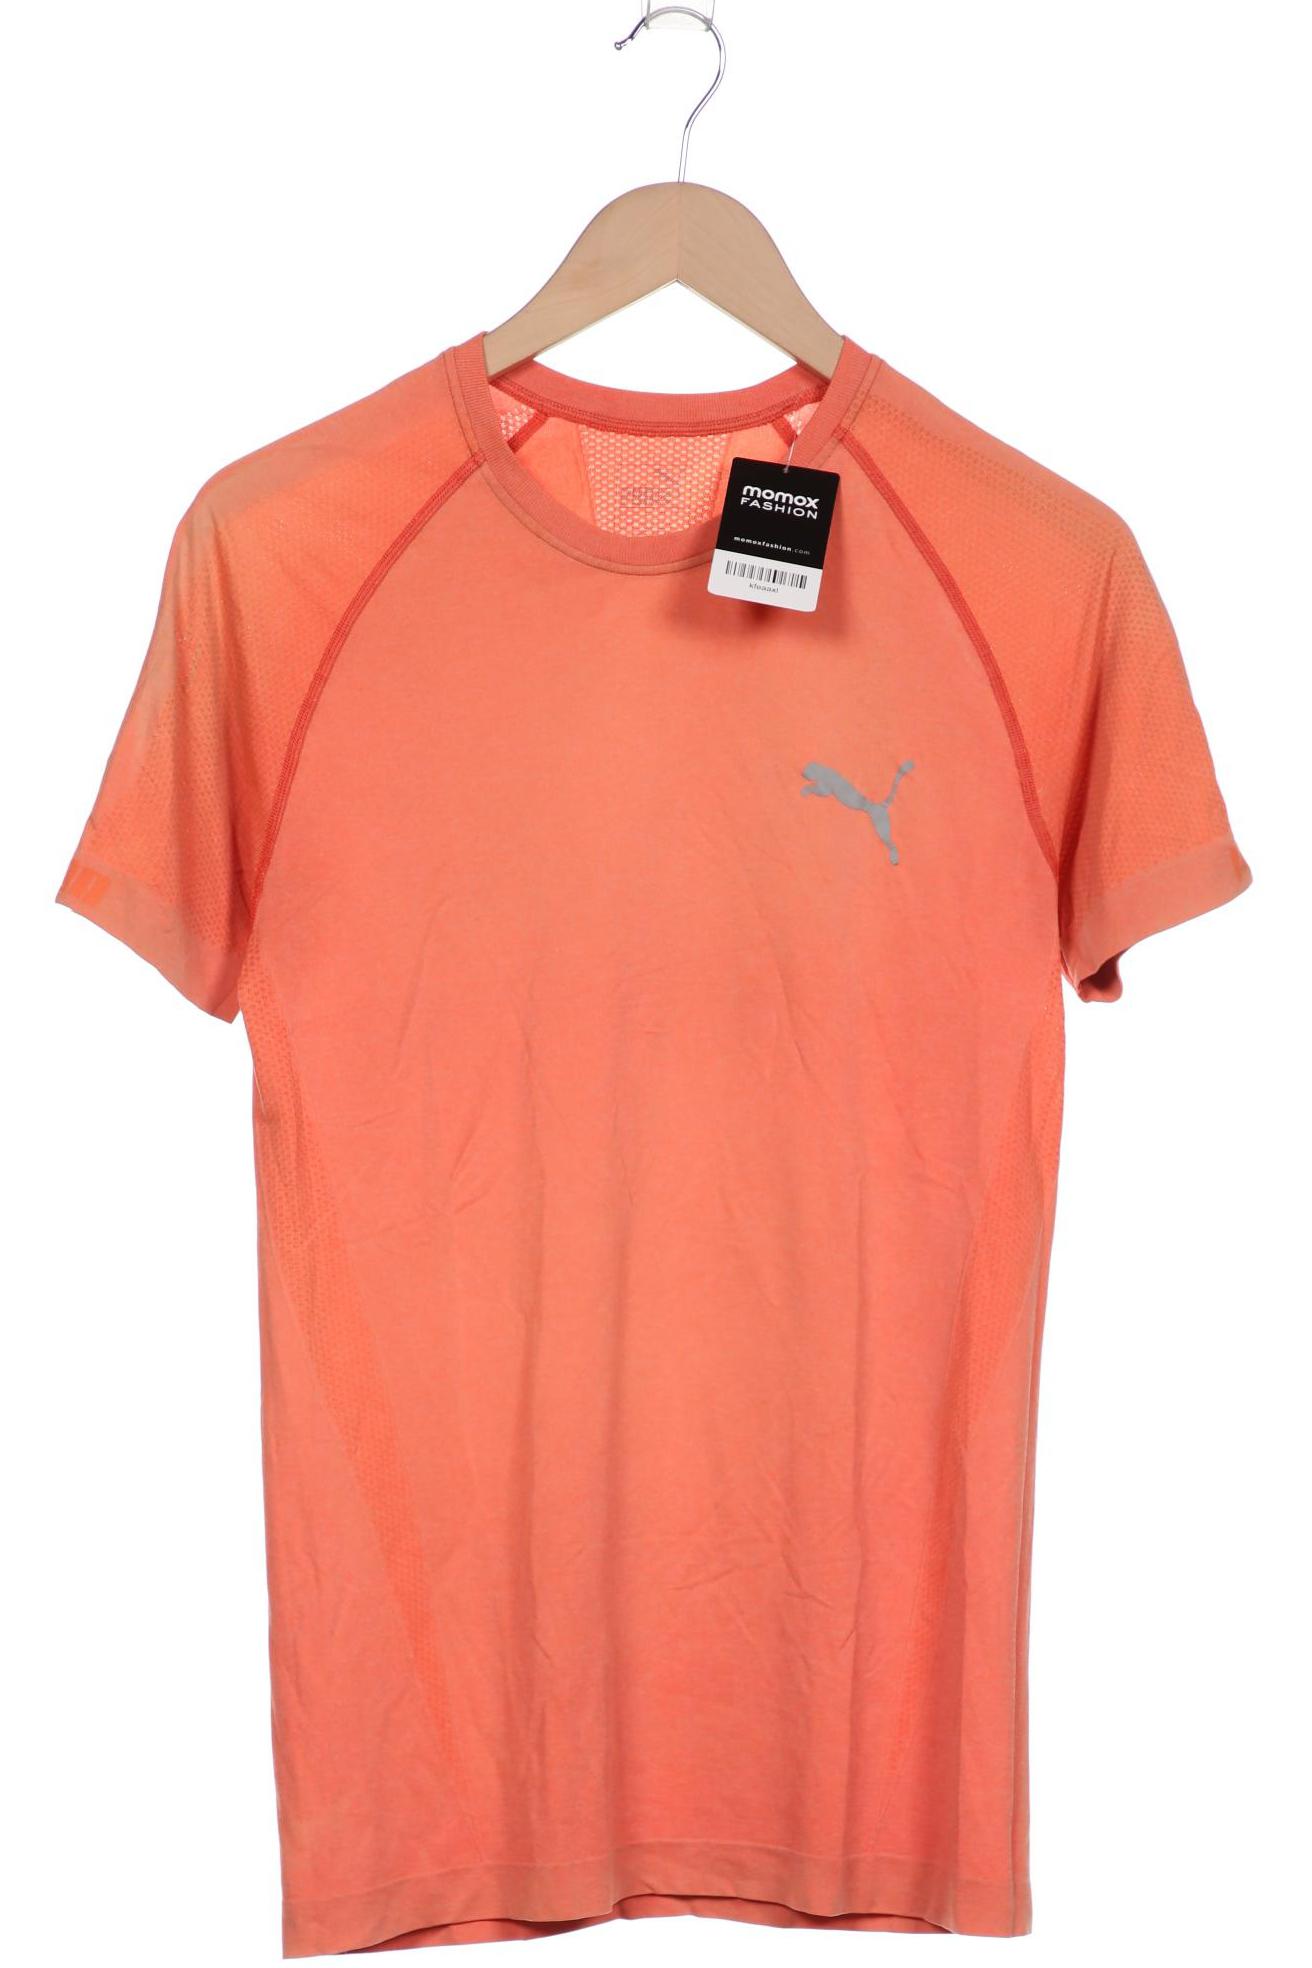 Puma Herren T-Shirt, orange, Gr. 46 von Puma